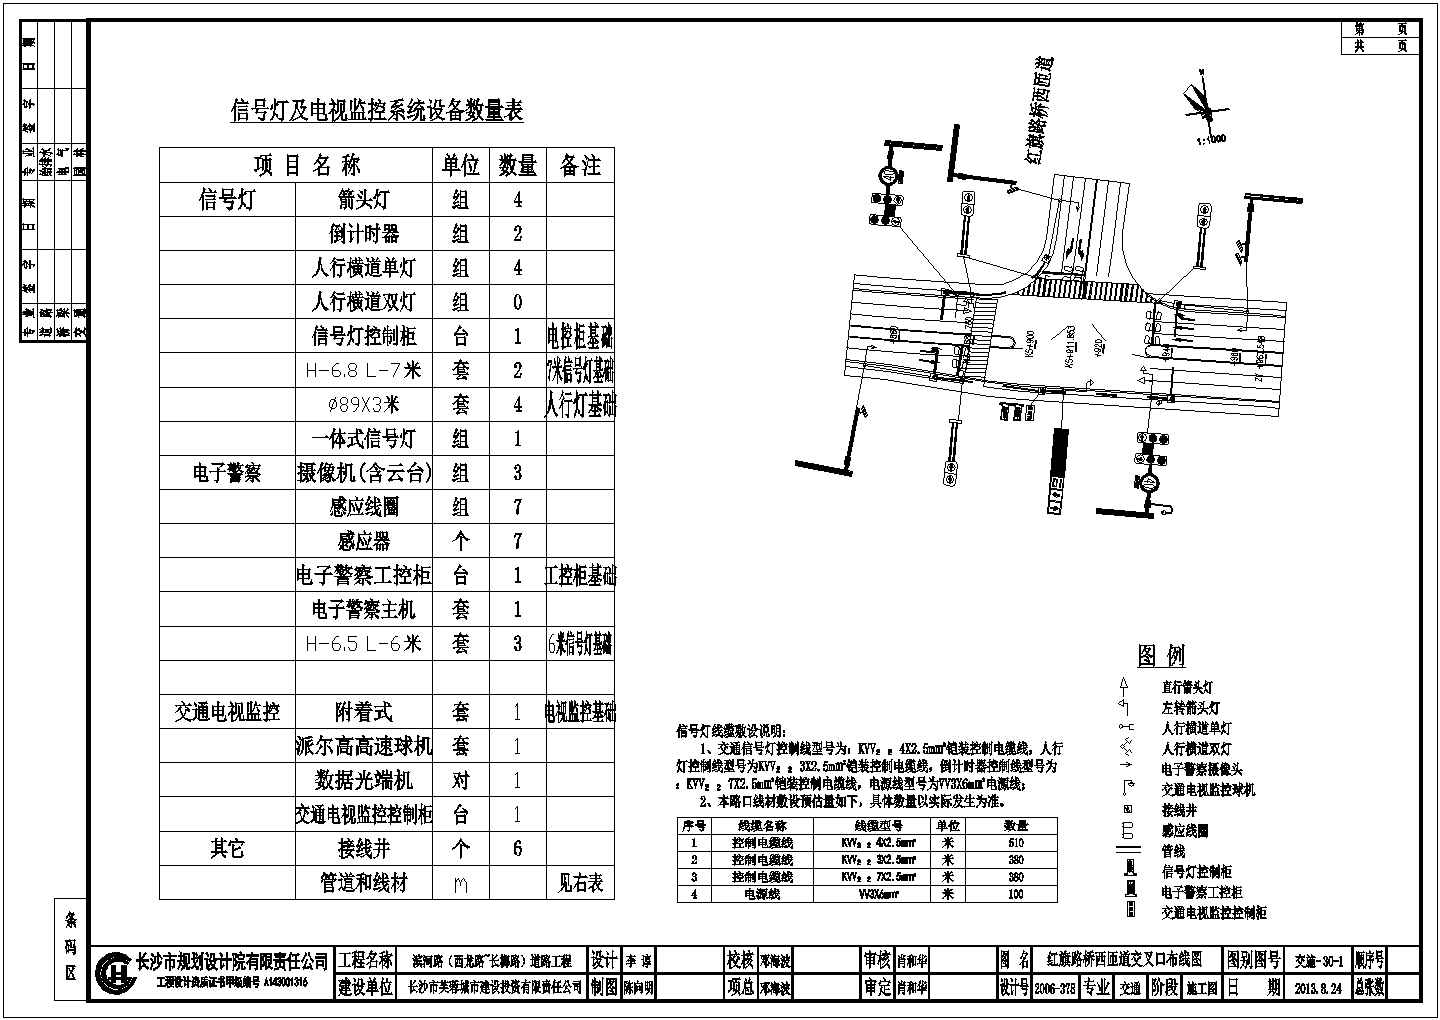 【长沙】道路交通设施工程施工招标文件、图纸及清单